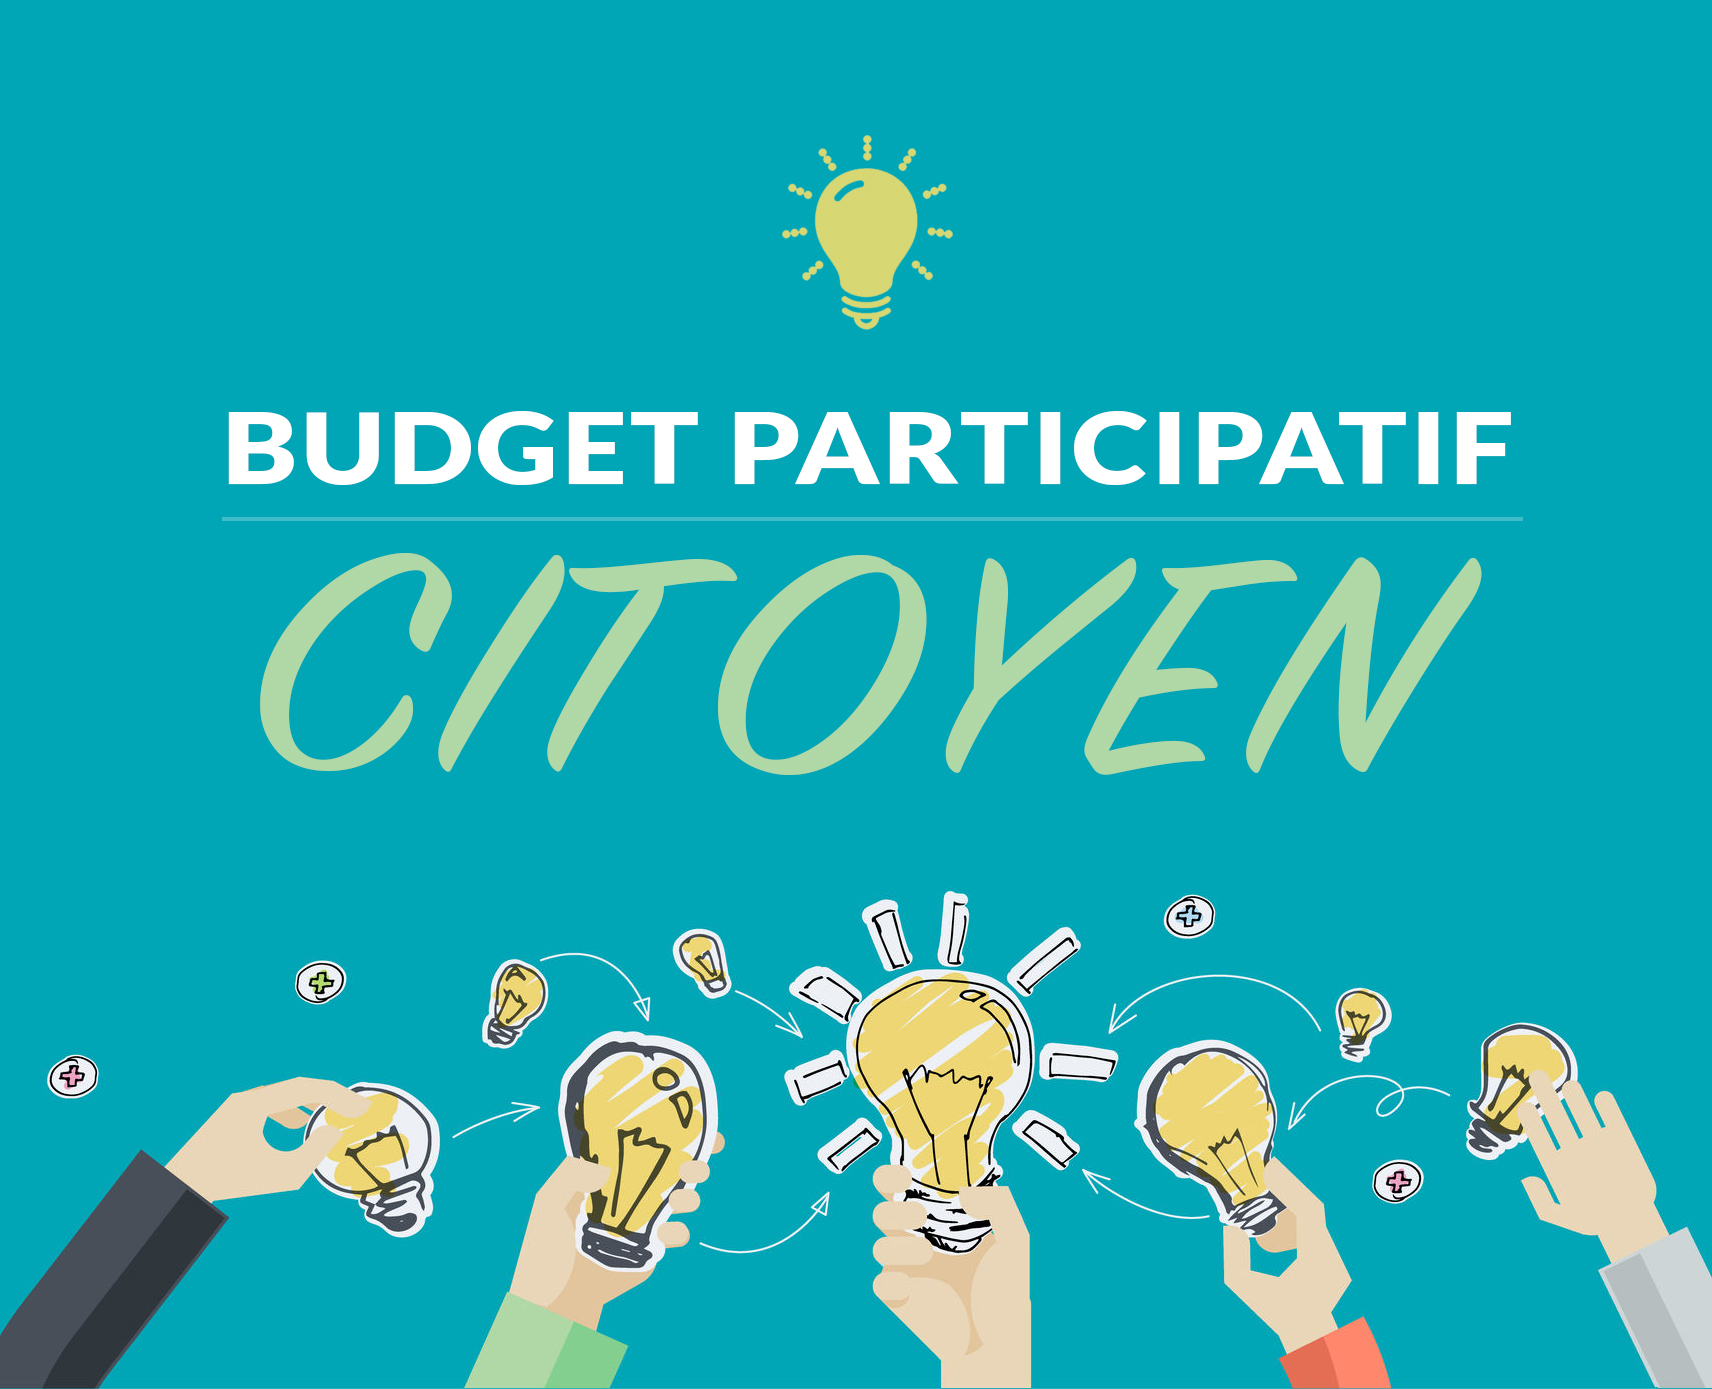 Budget_participatif.jpg (659 KB)